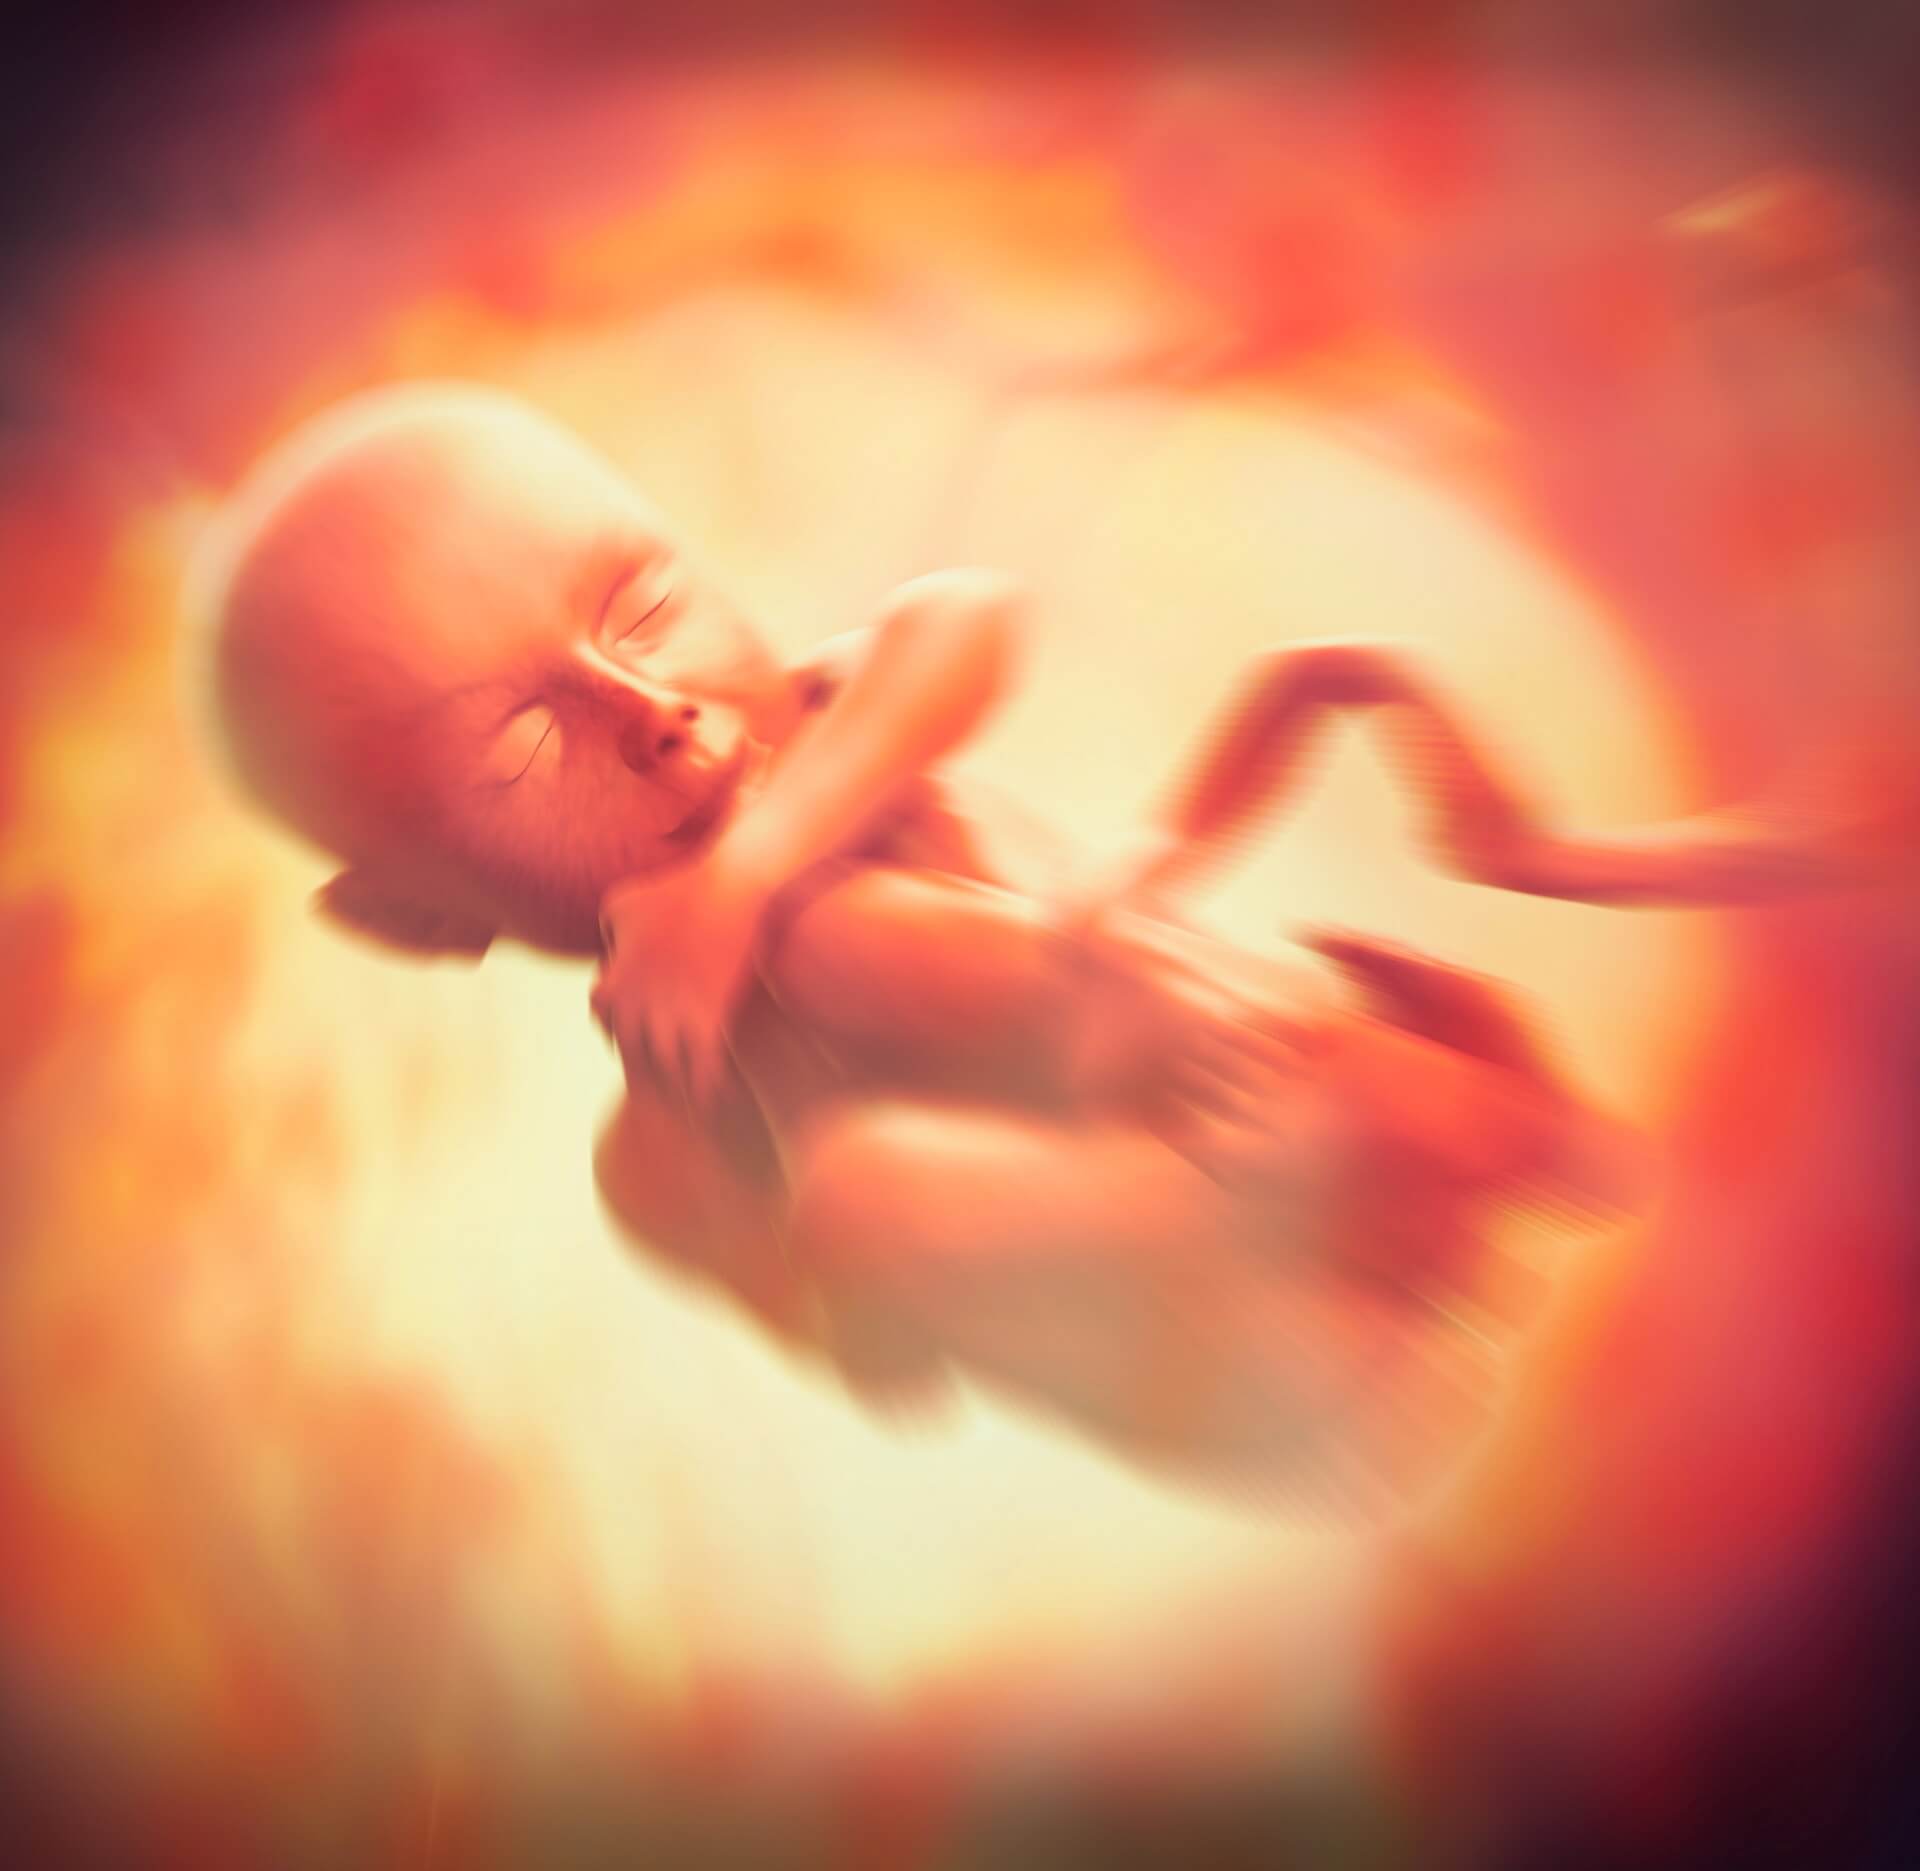 ORGANIZACJA ABORCYJNA PRZYZNAJE SIĘ DO ABORCJI W CELU POZYSKIWANIA „CZĘŚCI NIEMOWLĄT”